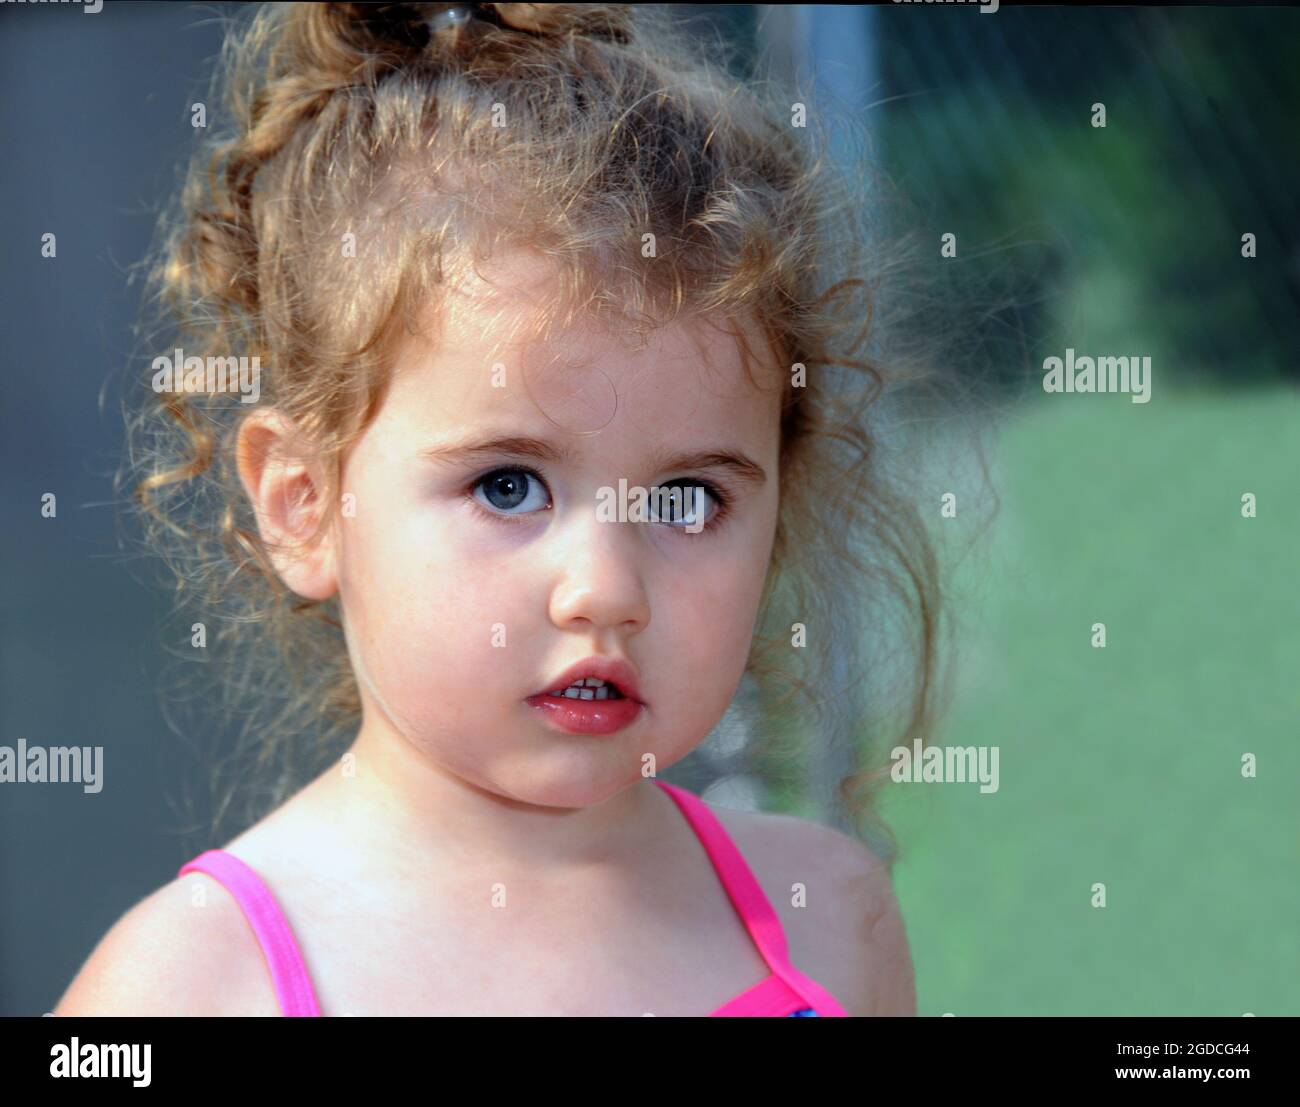 Das kleine Mädchen mit lockigen Köpfen blickt feierlich auf die Kamera. Nahaufnahme zeigt ihr kleines Mädchen Locken und Rosenknospen Mund. Stockfoto